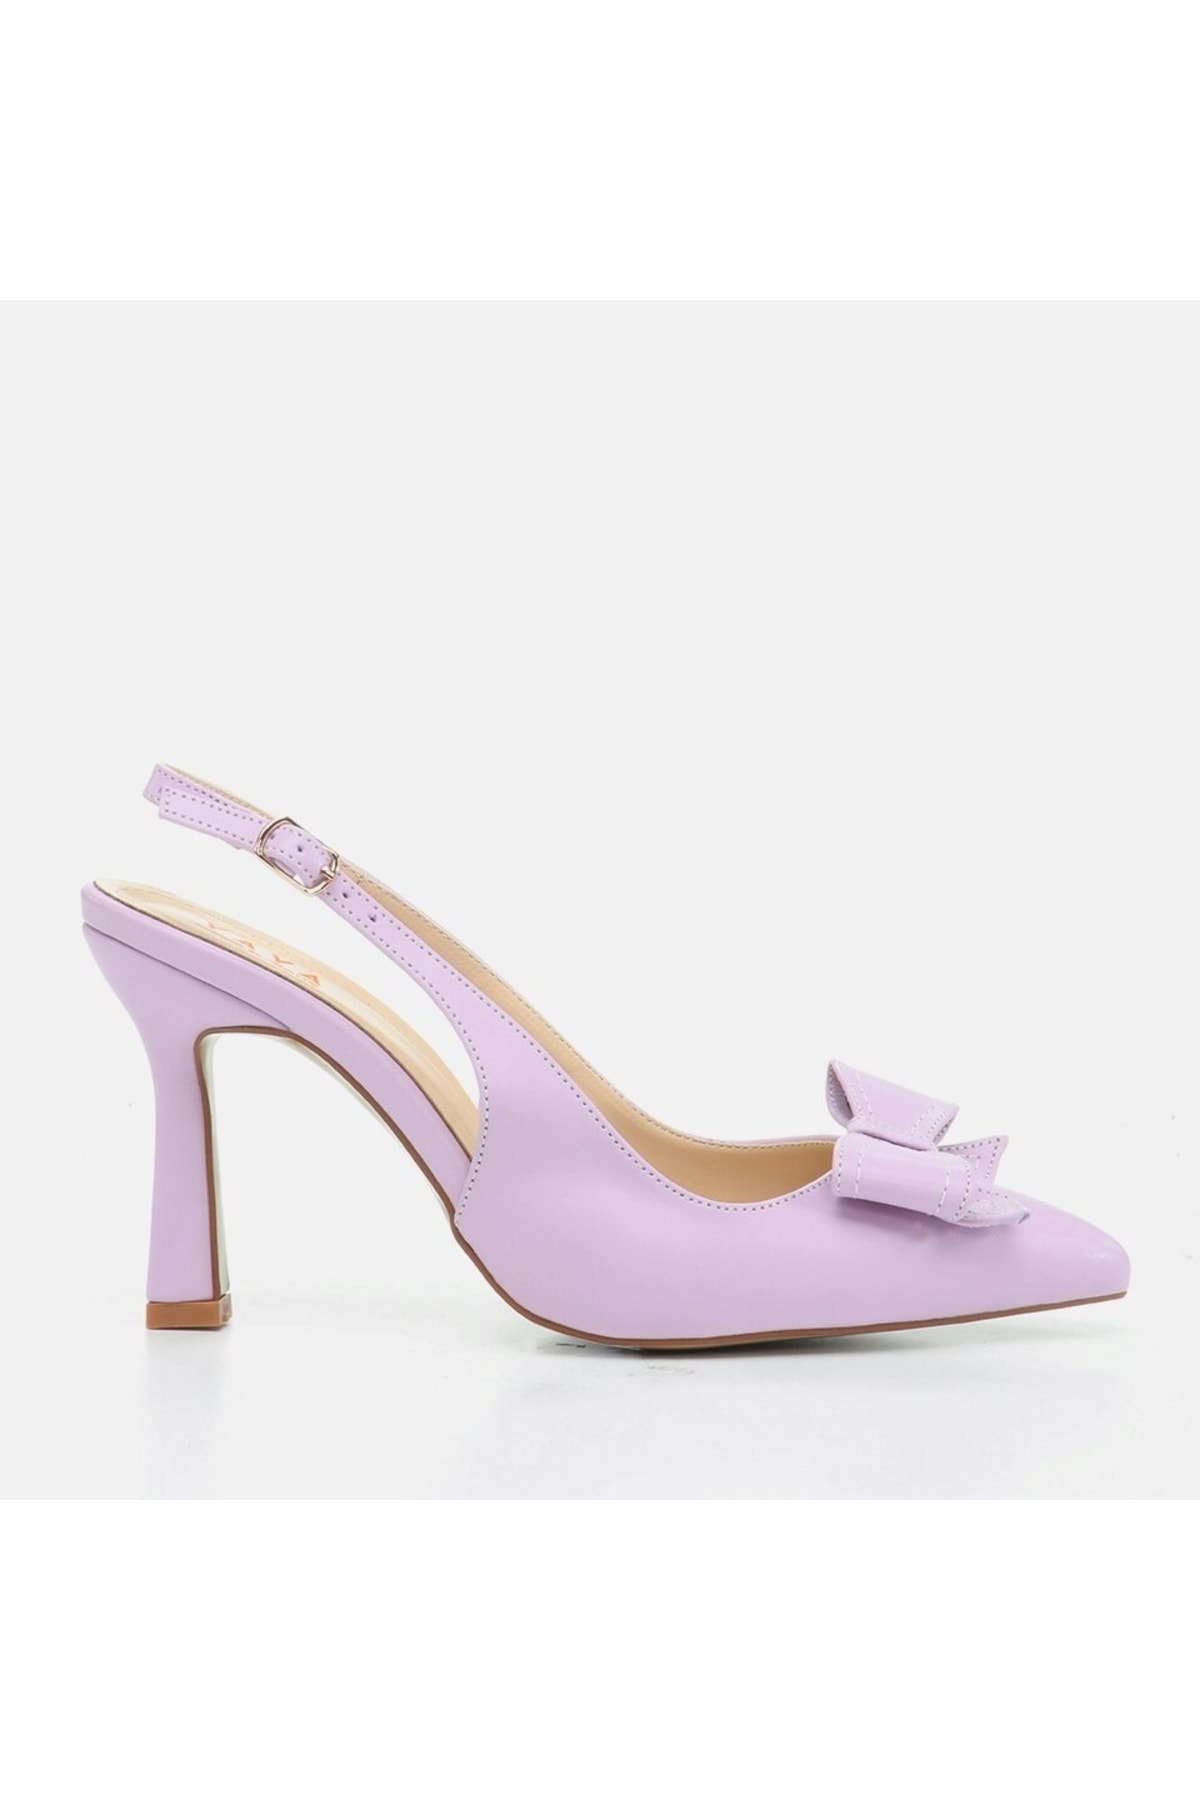 Yaya By Hotiç Lilac Women's Shoes